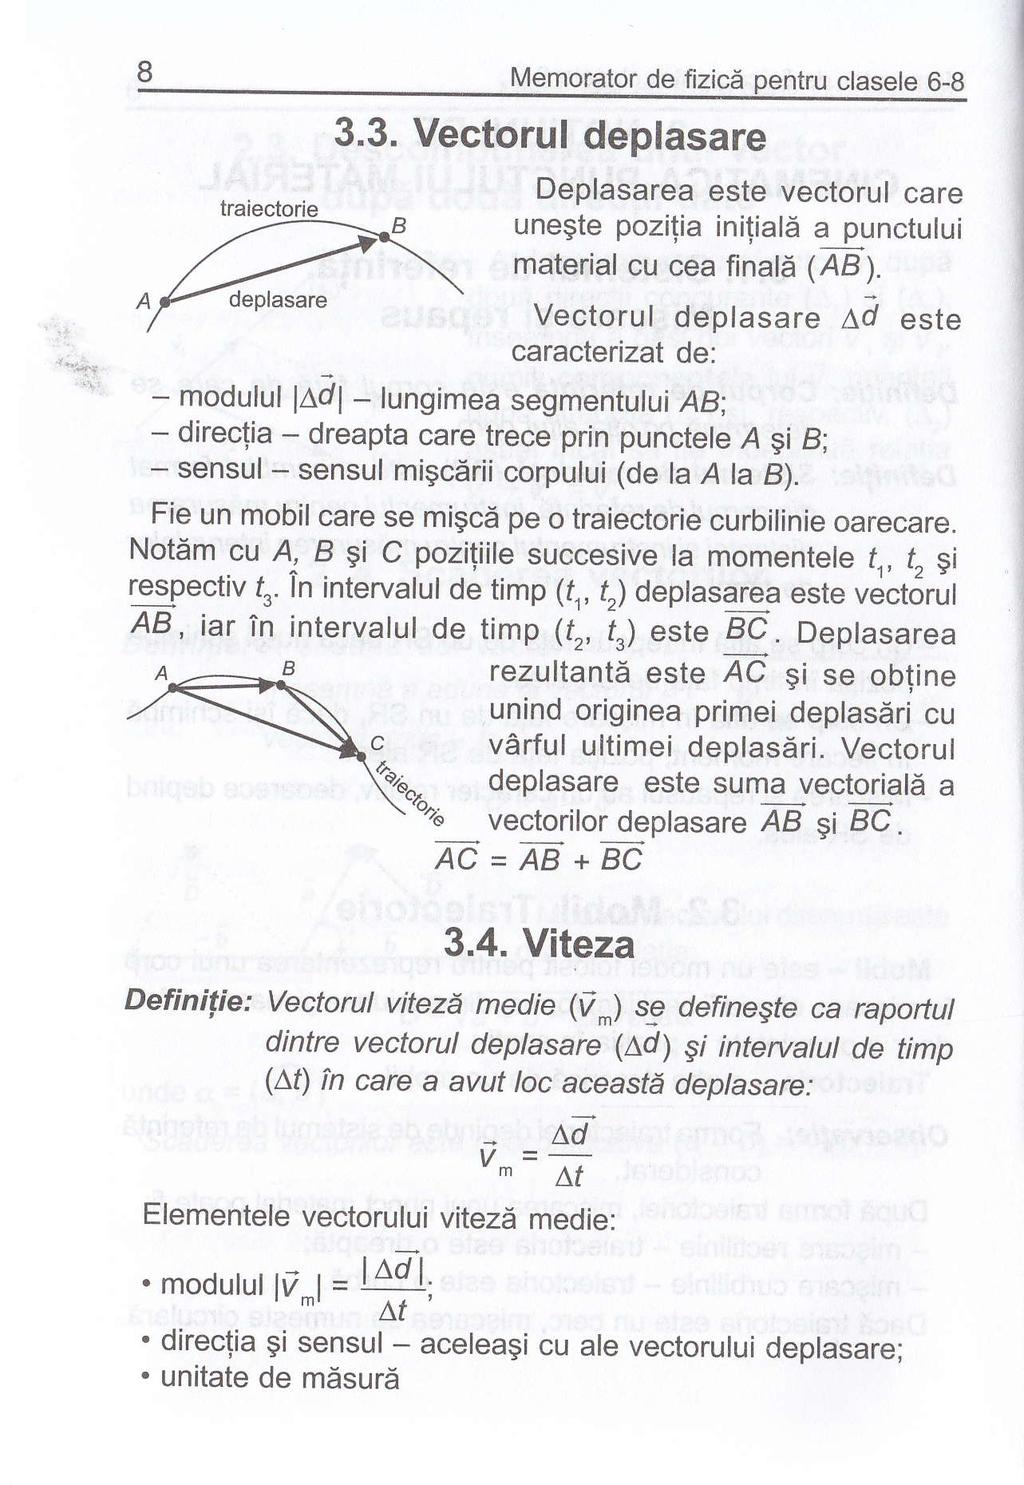 Af deolasare Memorator de fizicd pentru clasele 6-8 3.3. Vectorul deplasare Deplasarea este vectorul care material cu cea linald (AB).